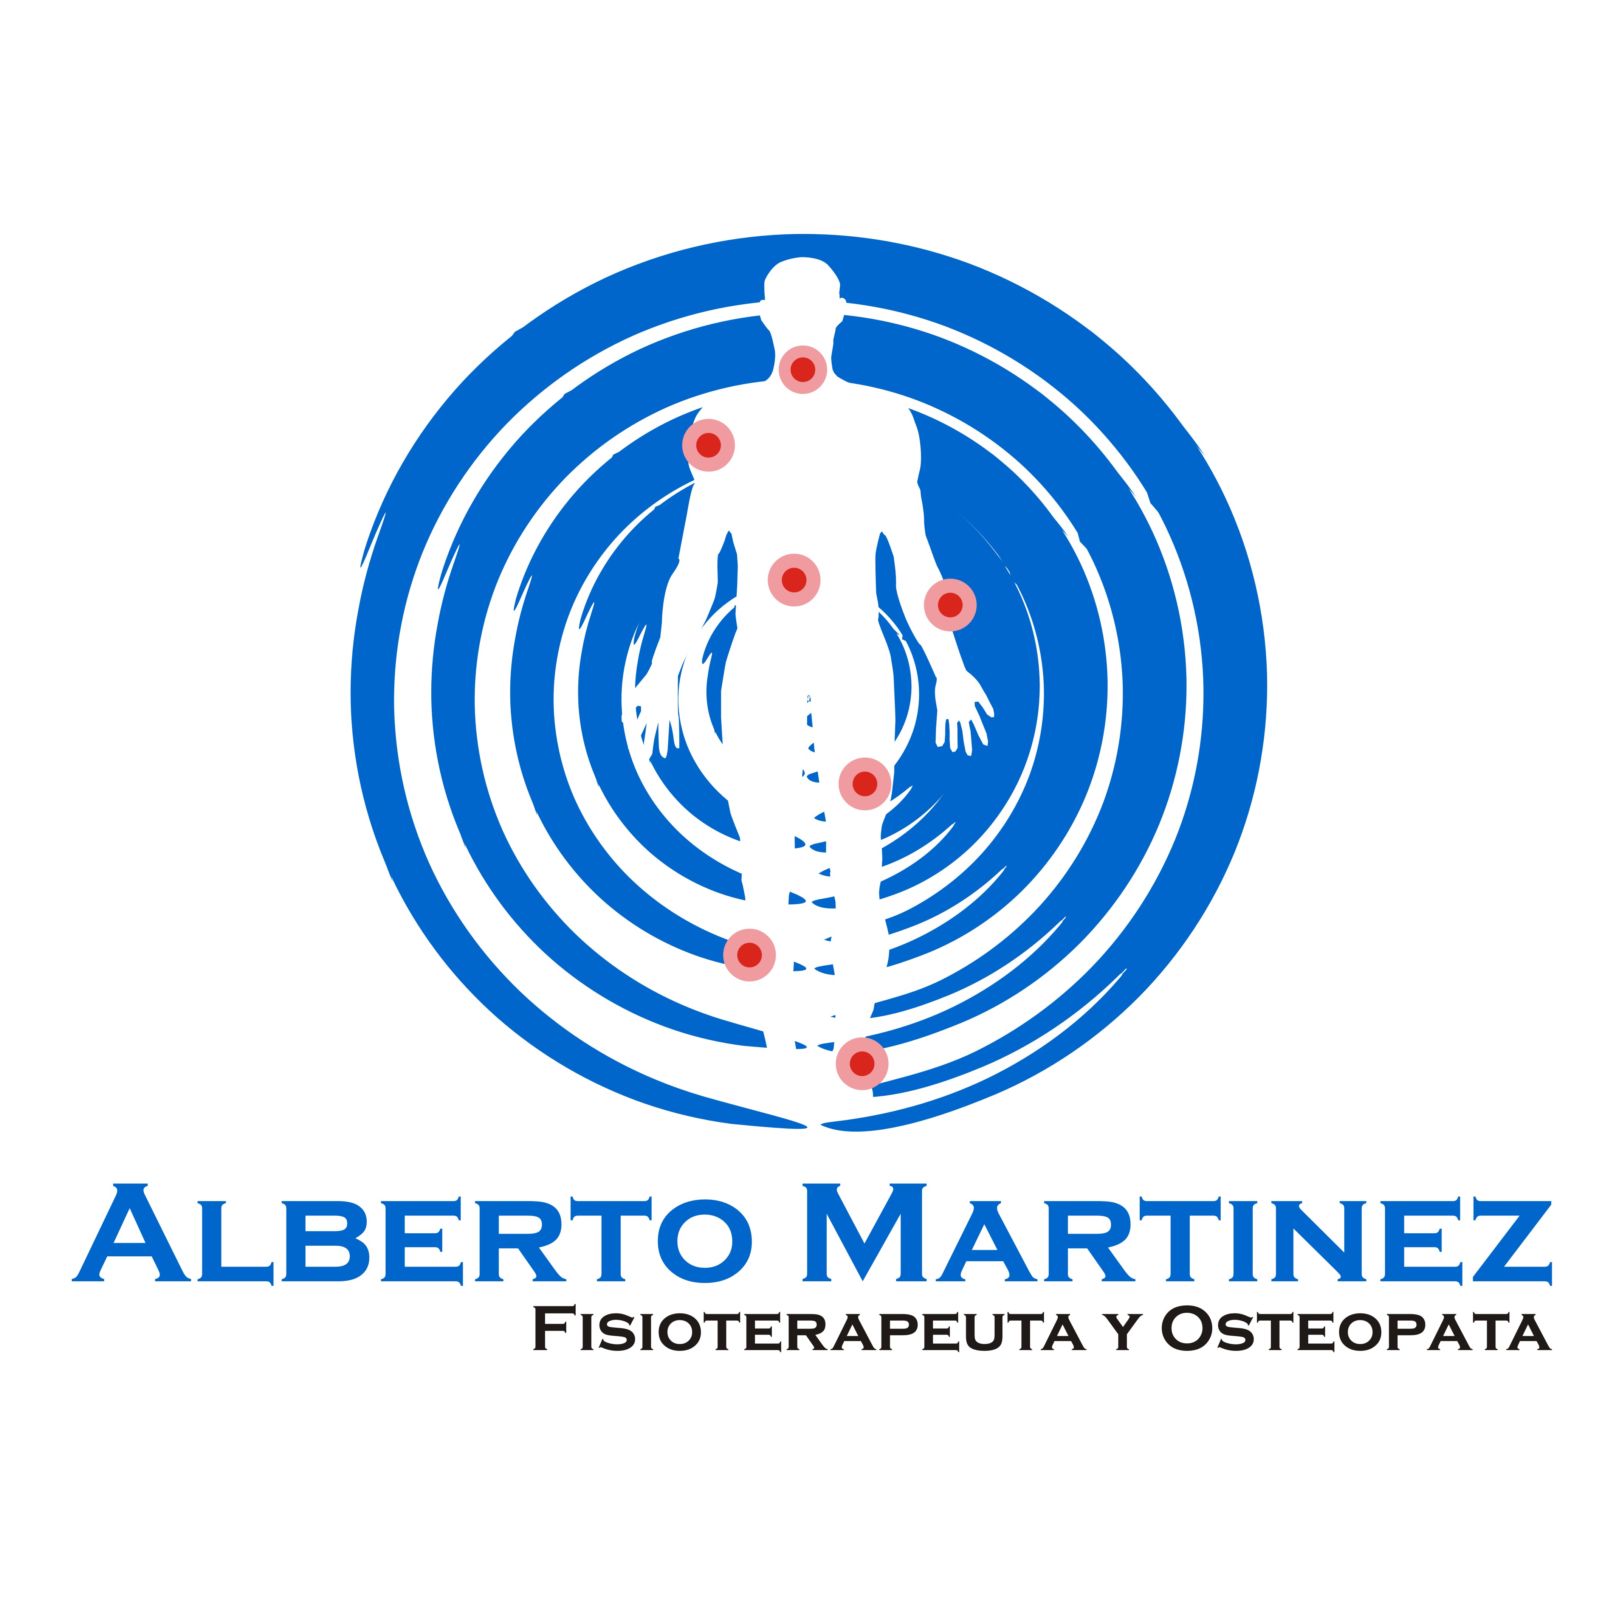 Alberto Martinez Fisioterapeuta Y Osteopata. Osteópatas en Valladolid